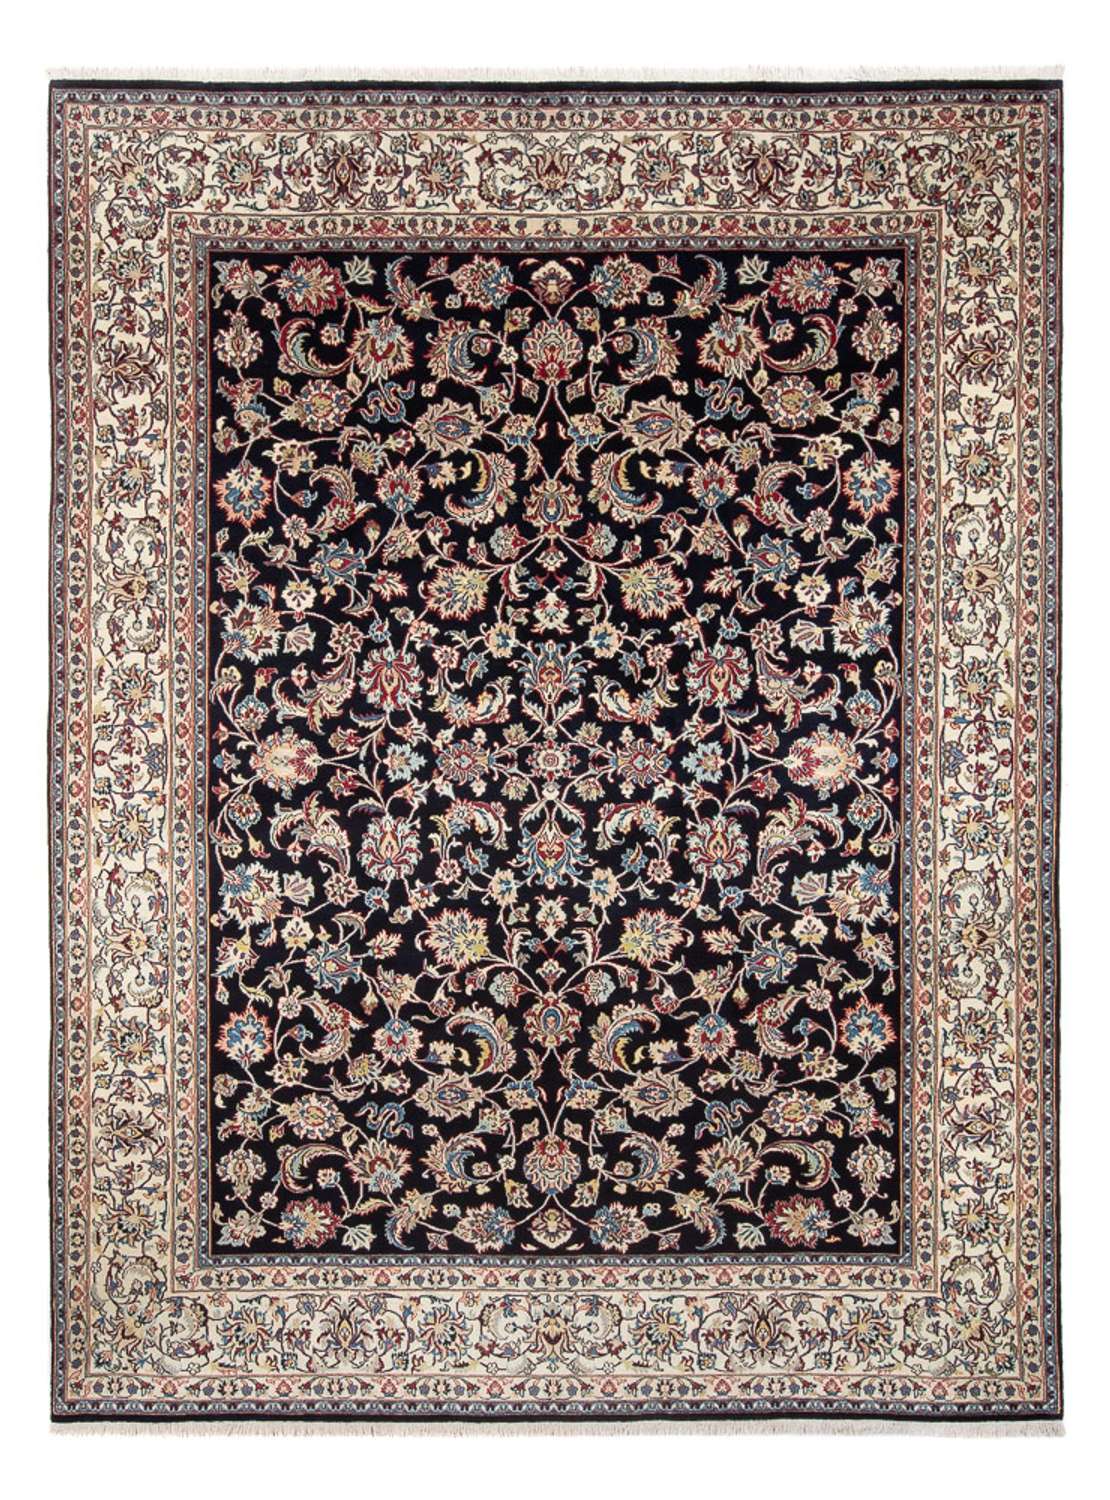 Persisk teppe - klassisk - 340 x 243 cm - mørkeblå